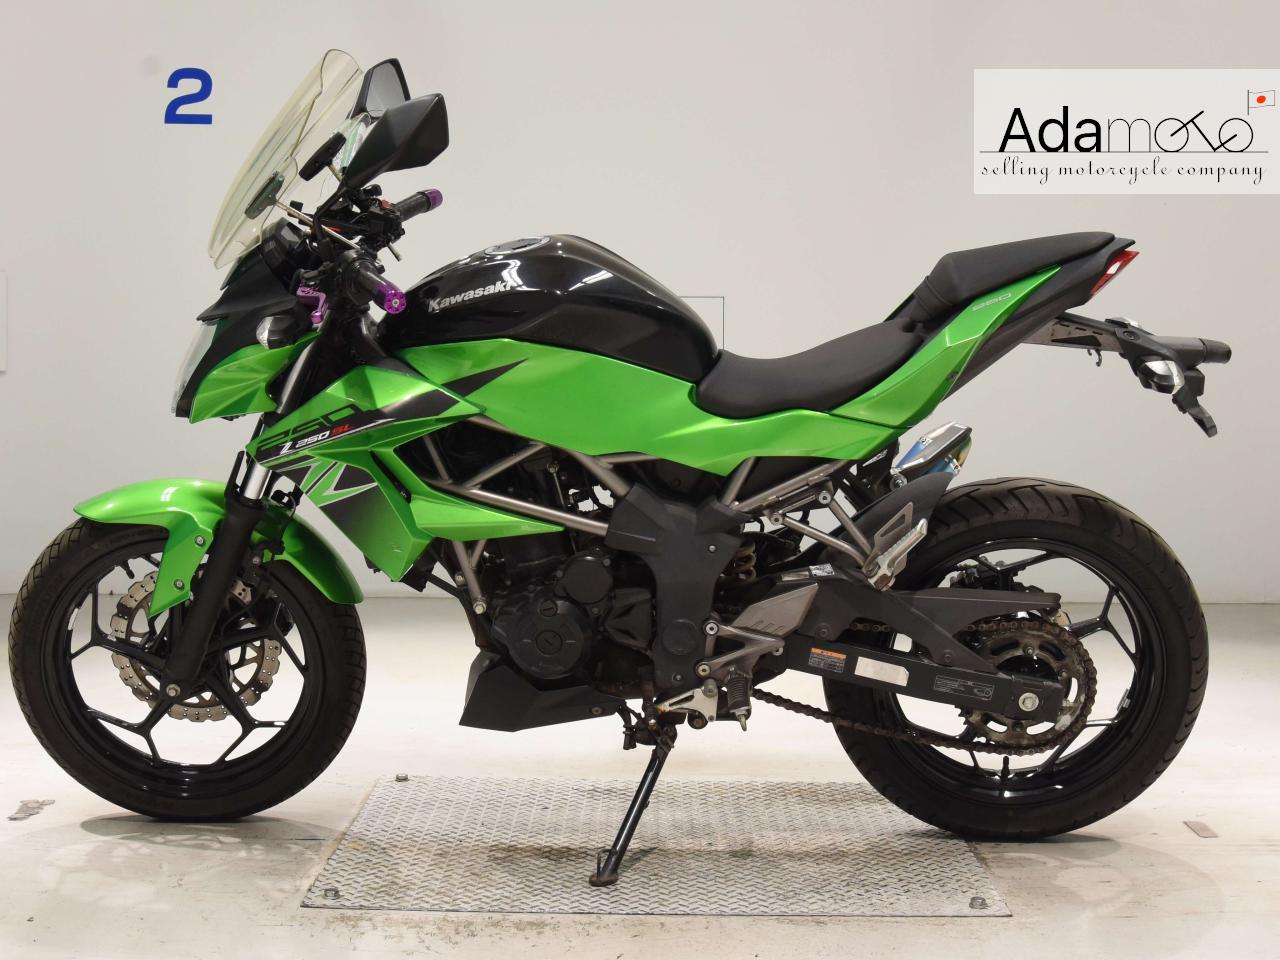 Kawasaki Z250SL - Adamoto - Motorcycles from Japan